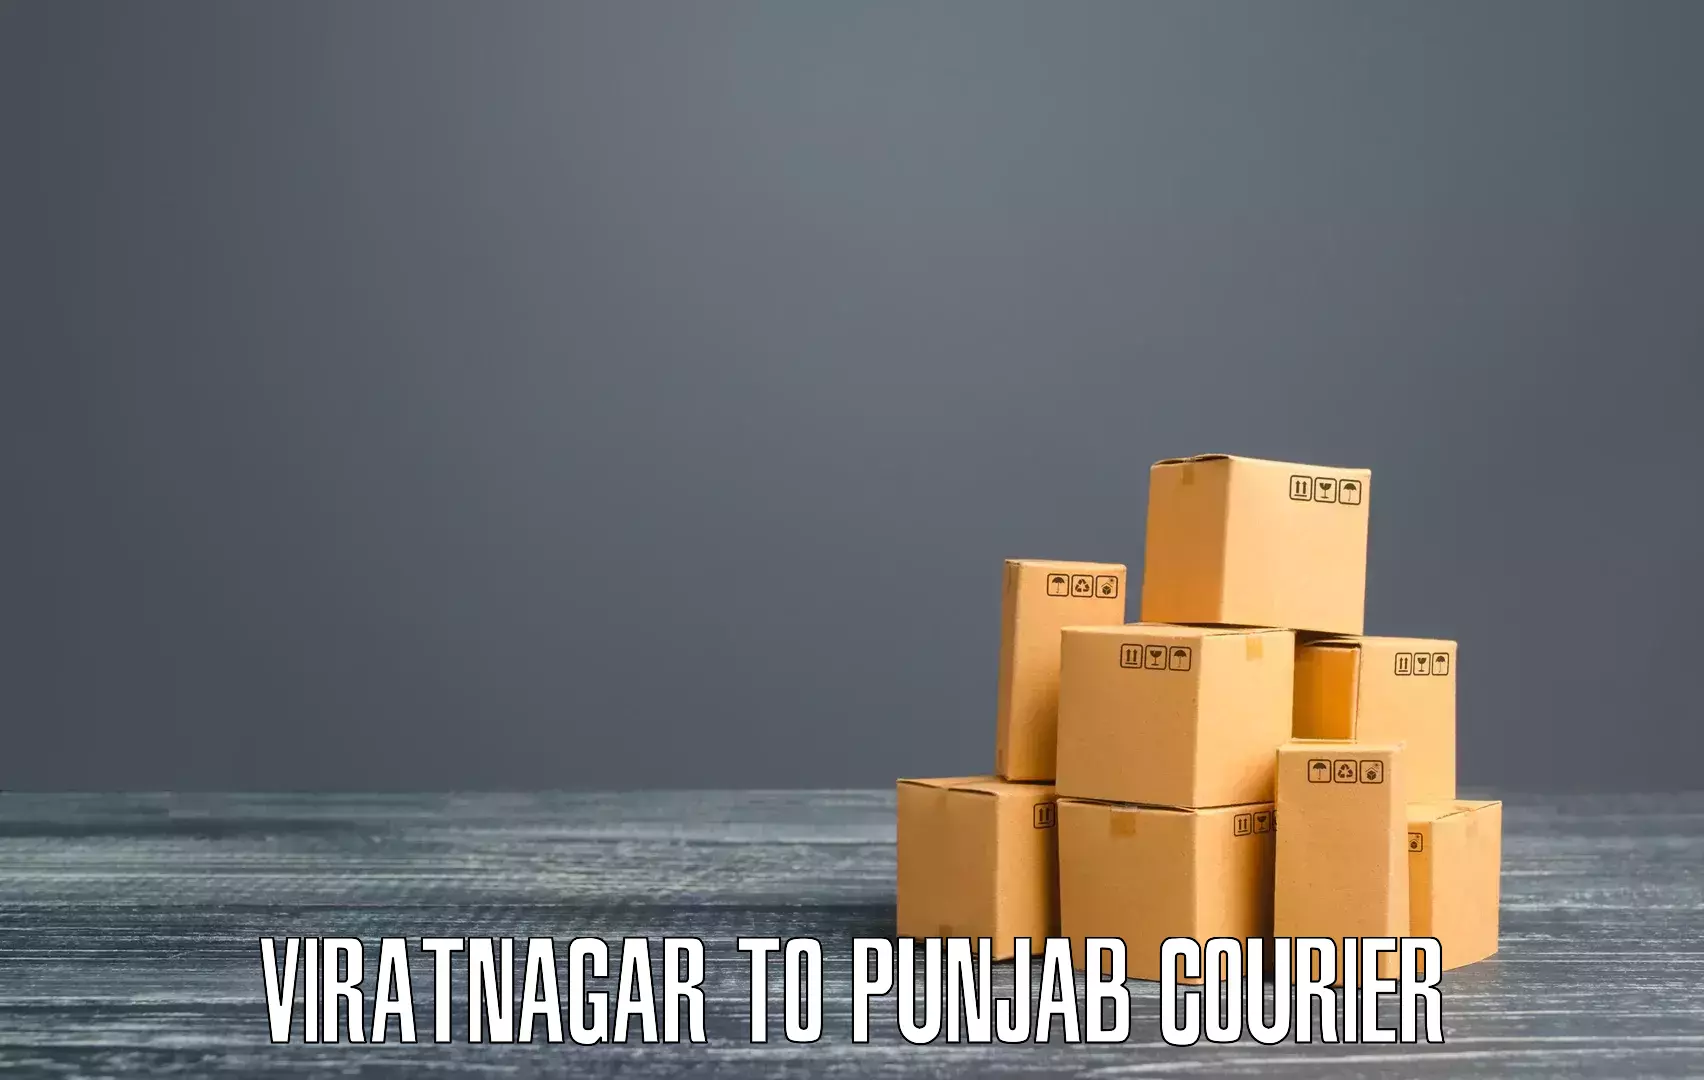 Digital shipping tools Viratnagar to Dhilwan